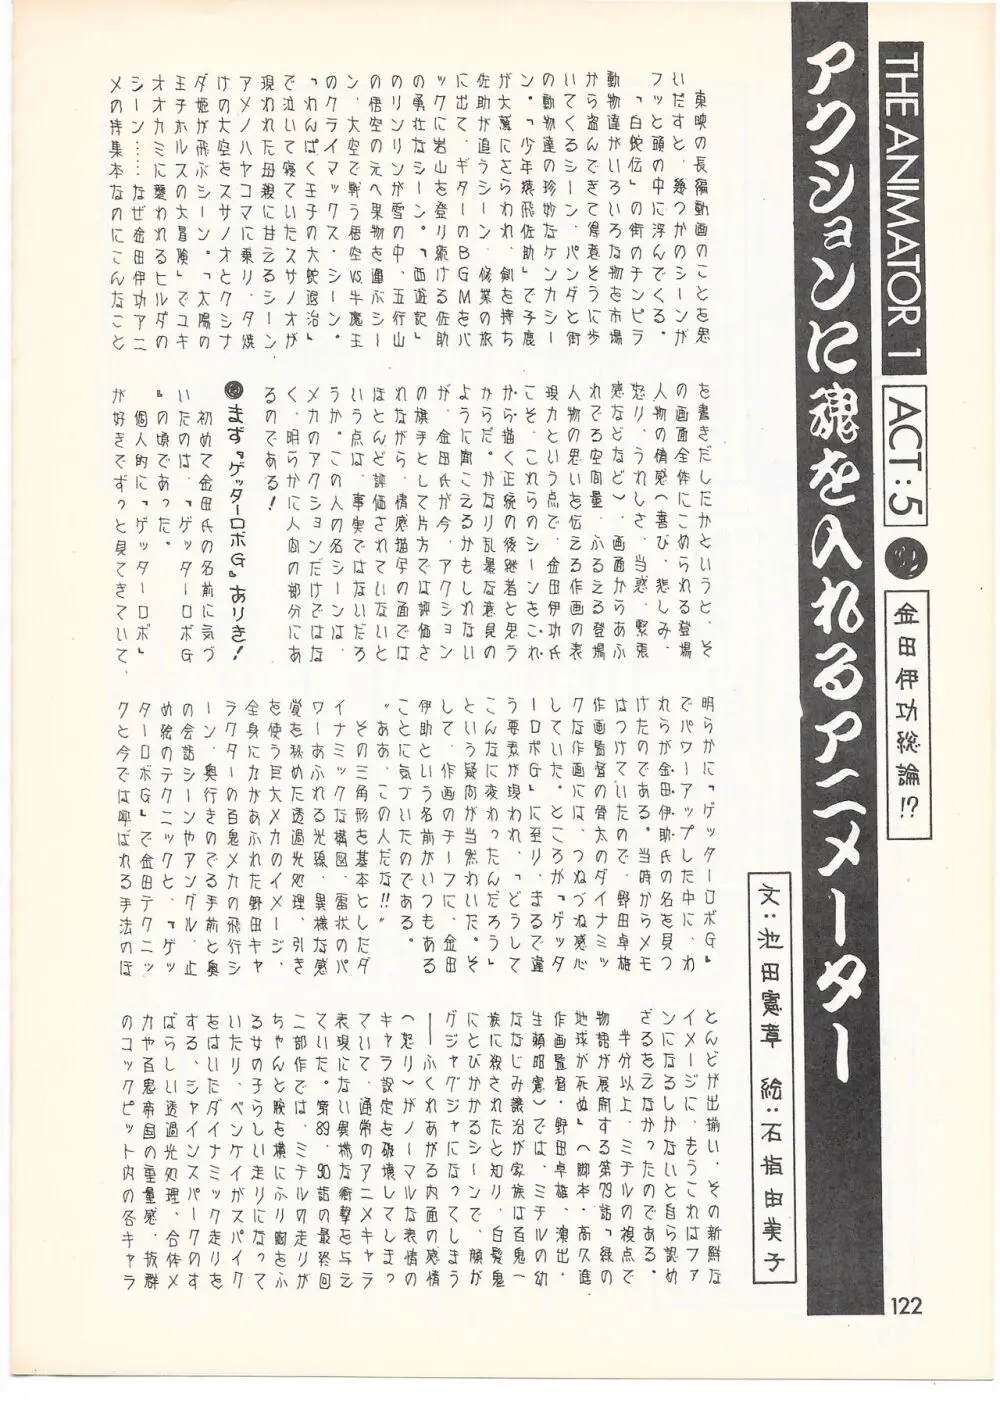 THE ANIMATOR 1 金田伊功特集号 117ページ